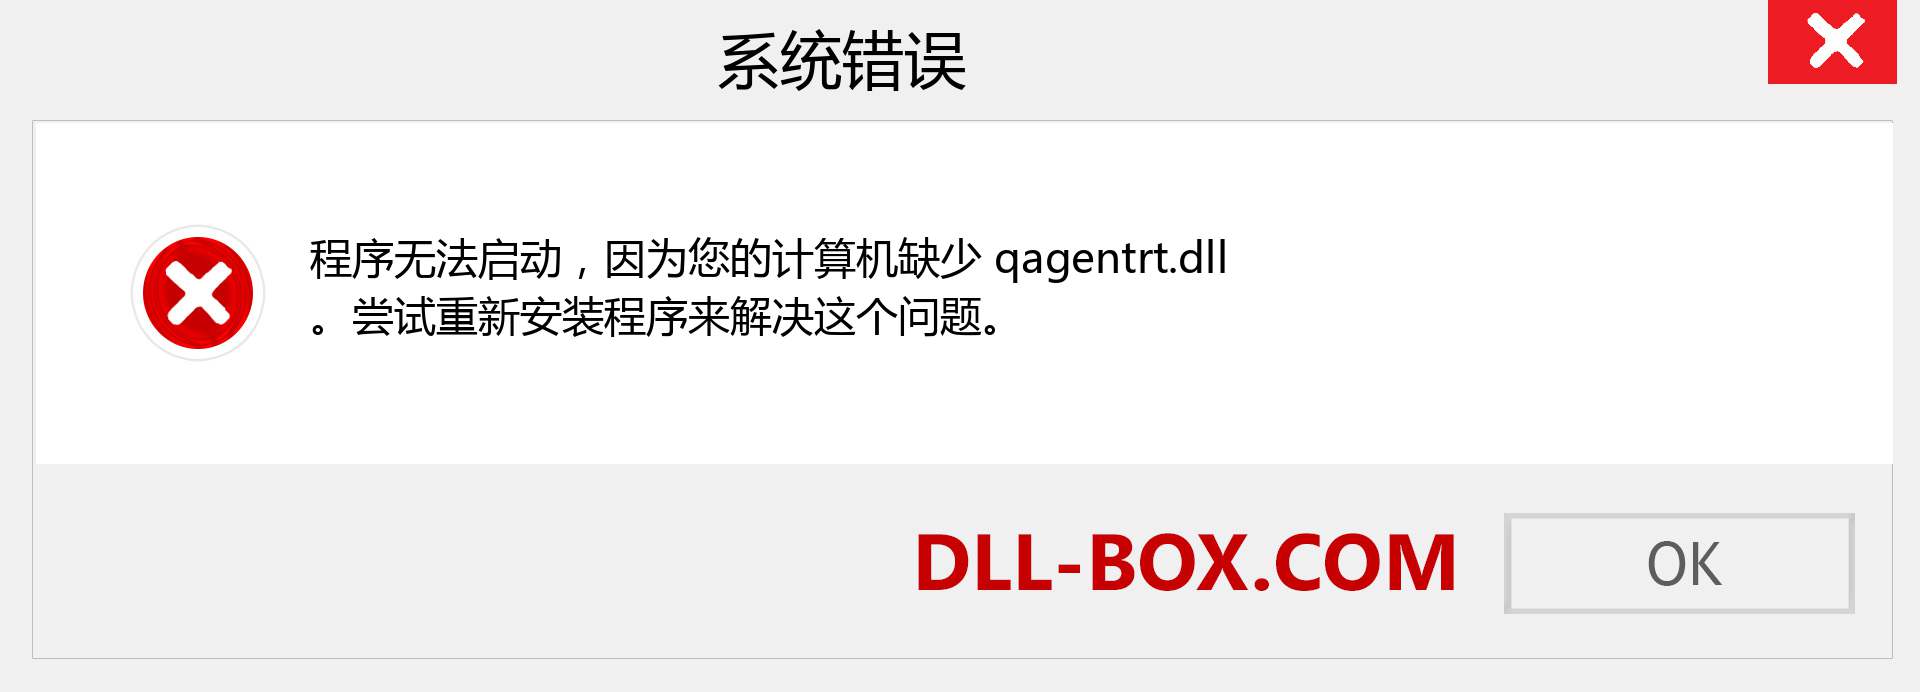 qagentrt.dll 文件丢失？。 适用于 Windows 7、8、10 的下载 - 修复 Windows、照片、图像上的 qagentrt dll 丢失错误